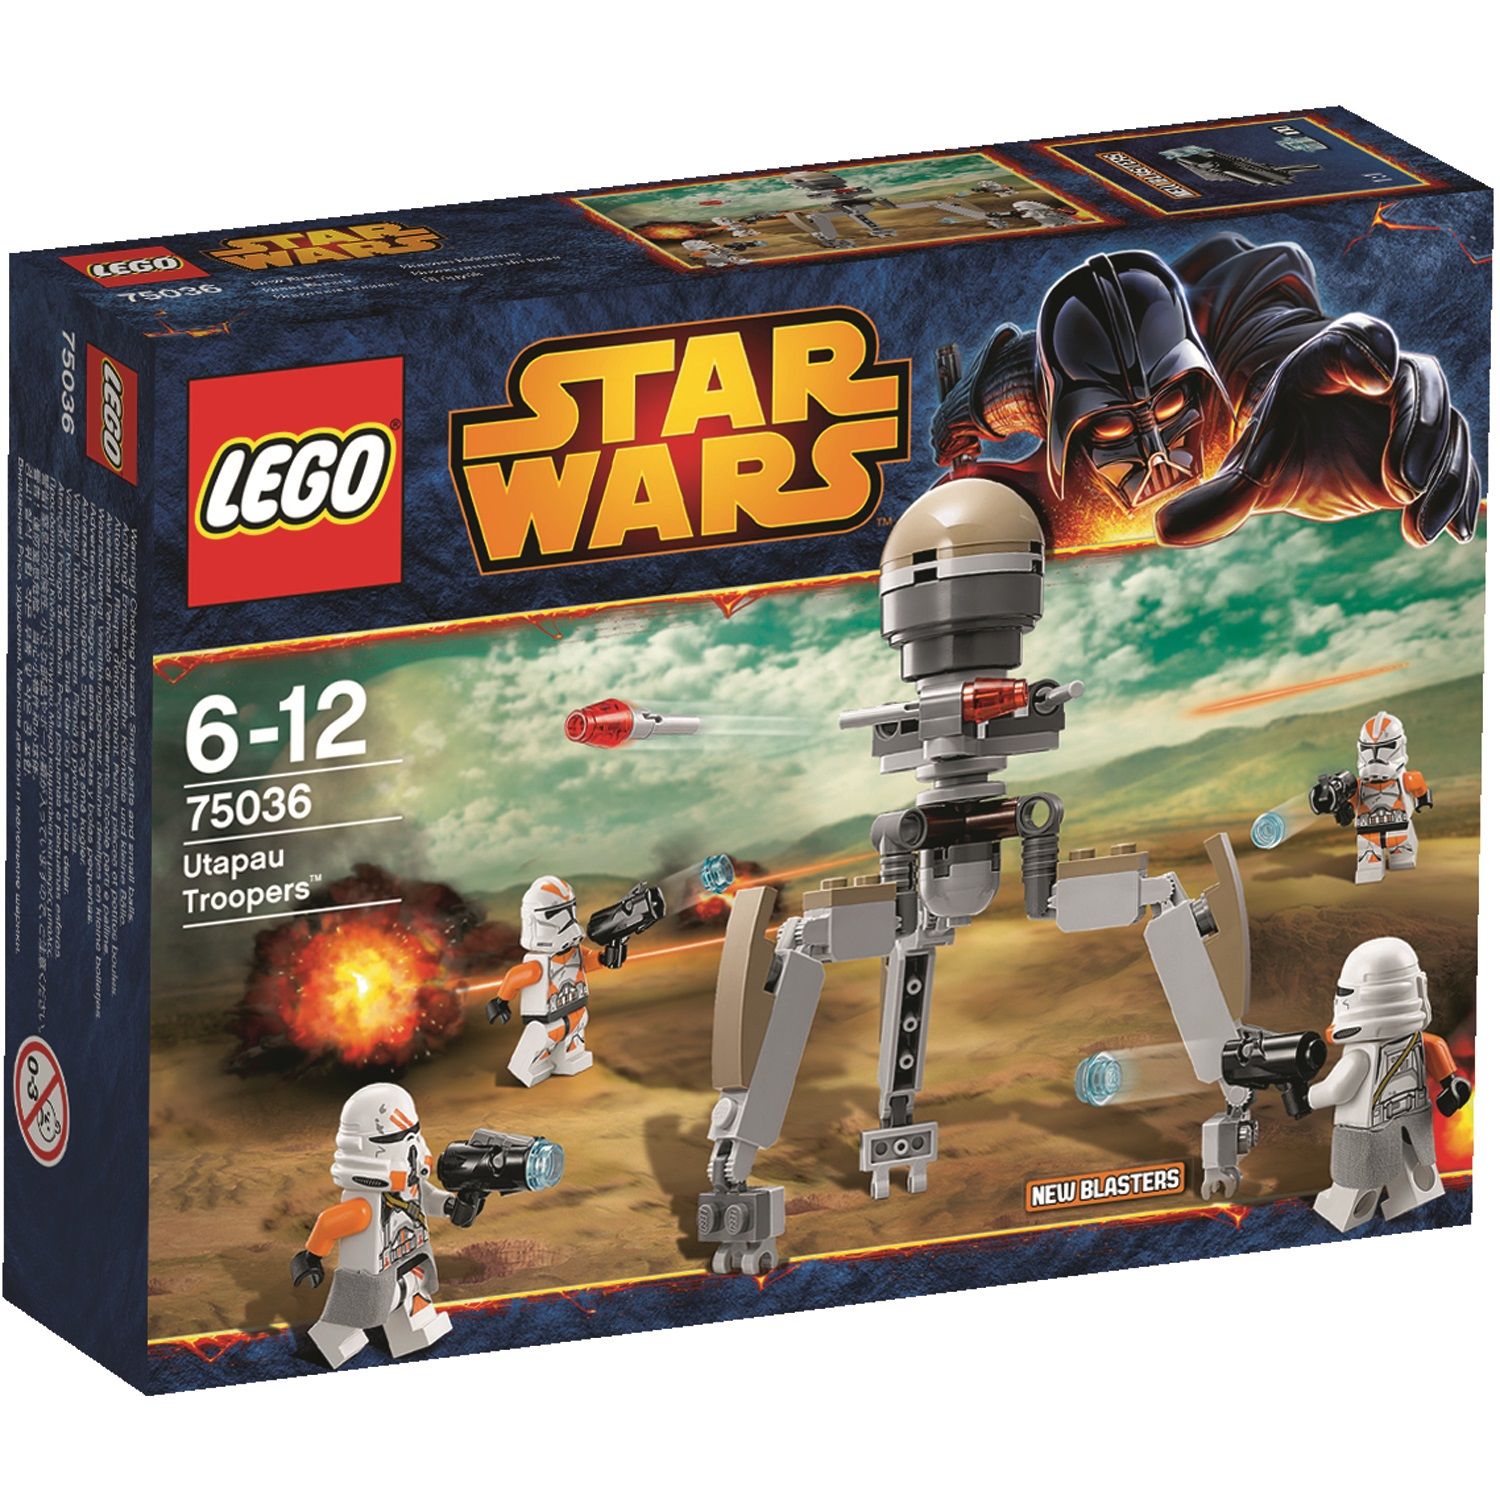  Set de constructie LEGO Star Wars - Utapau Troopers 75036 